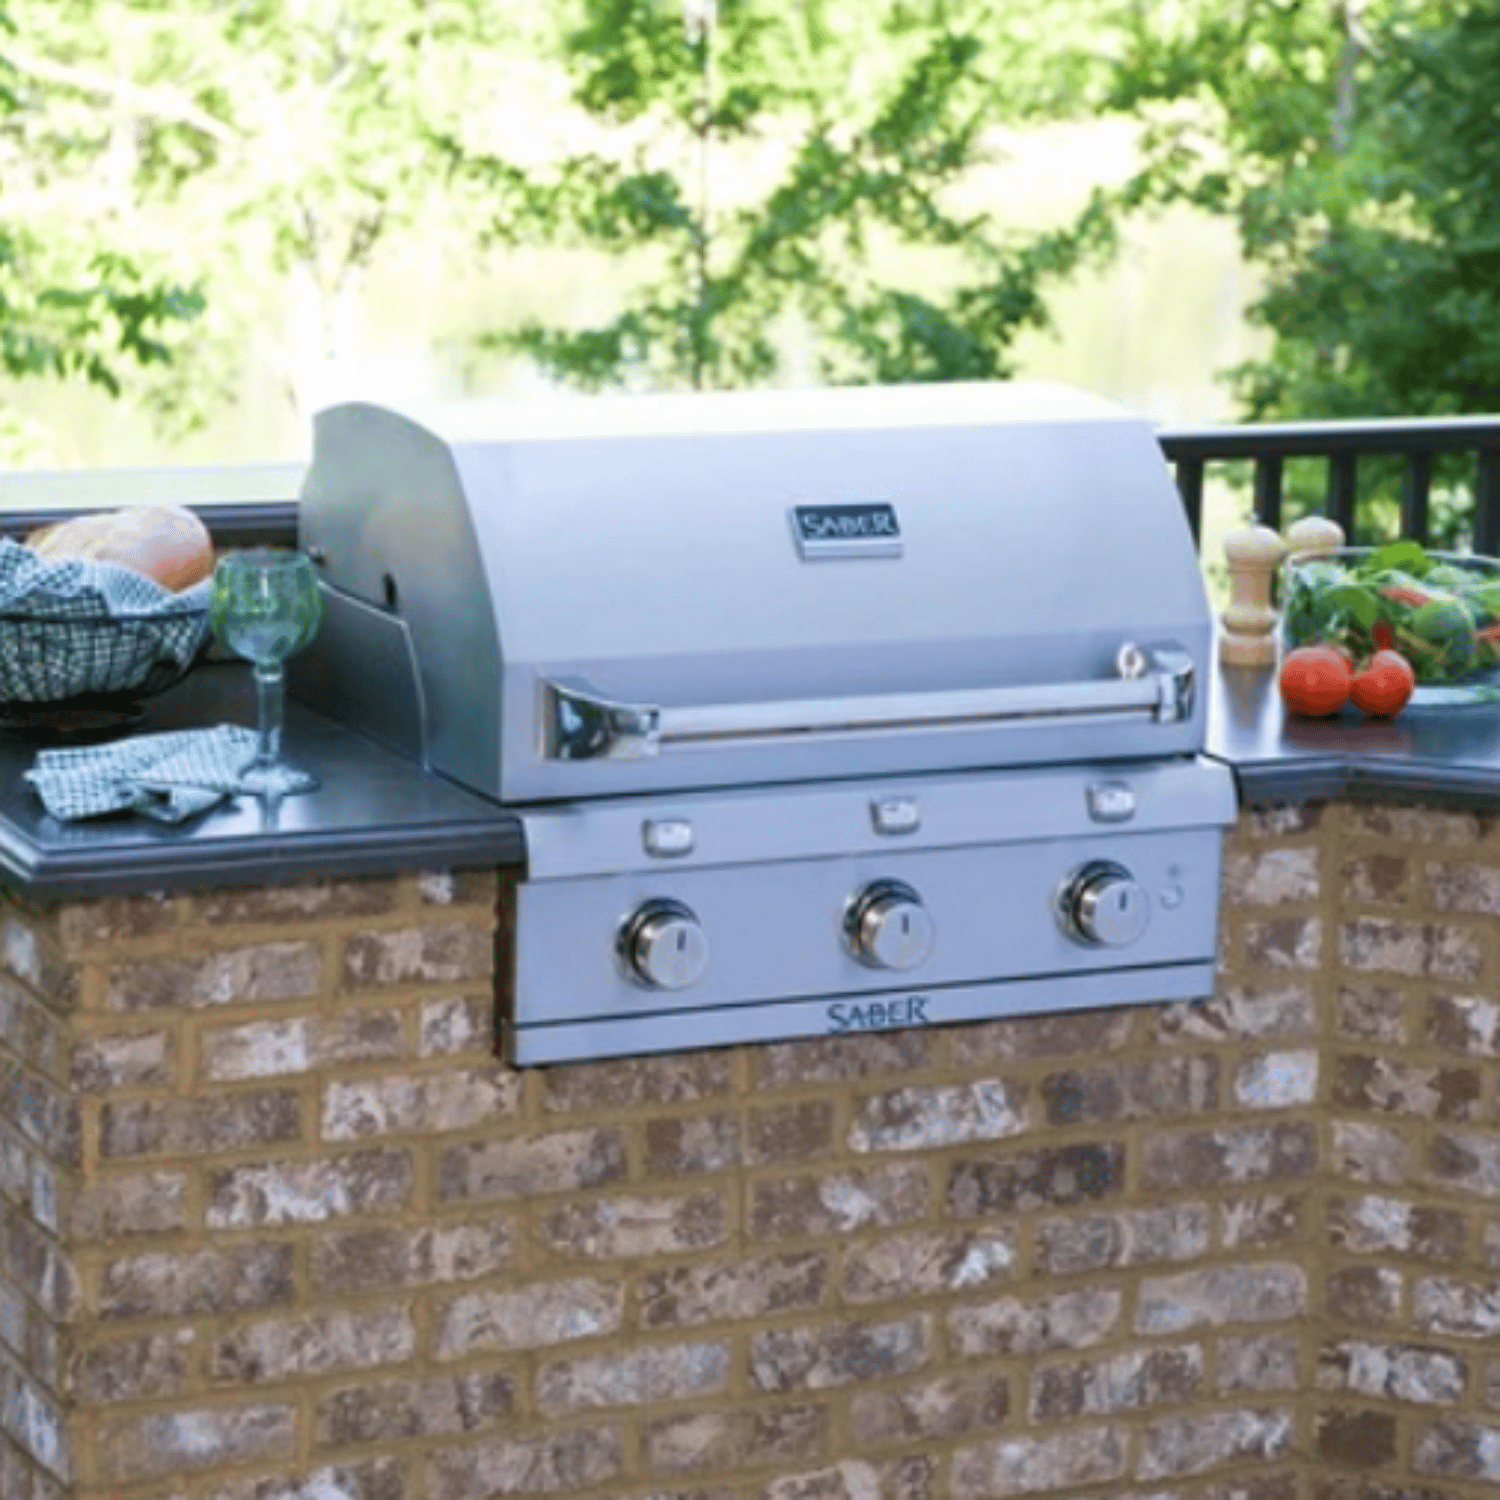 Built-in Barbecue Premium 500 – Saber